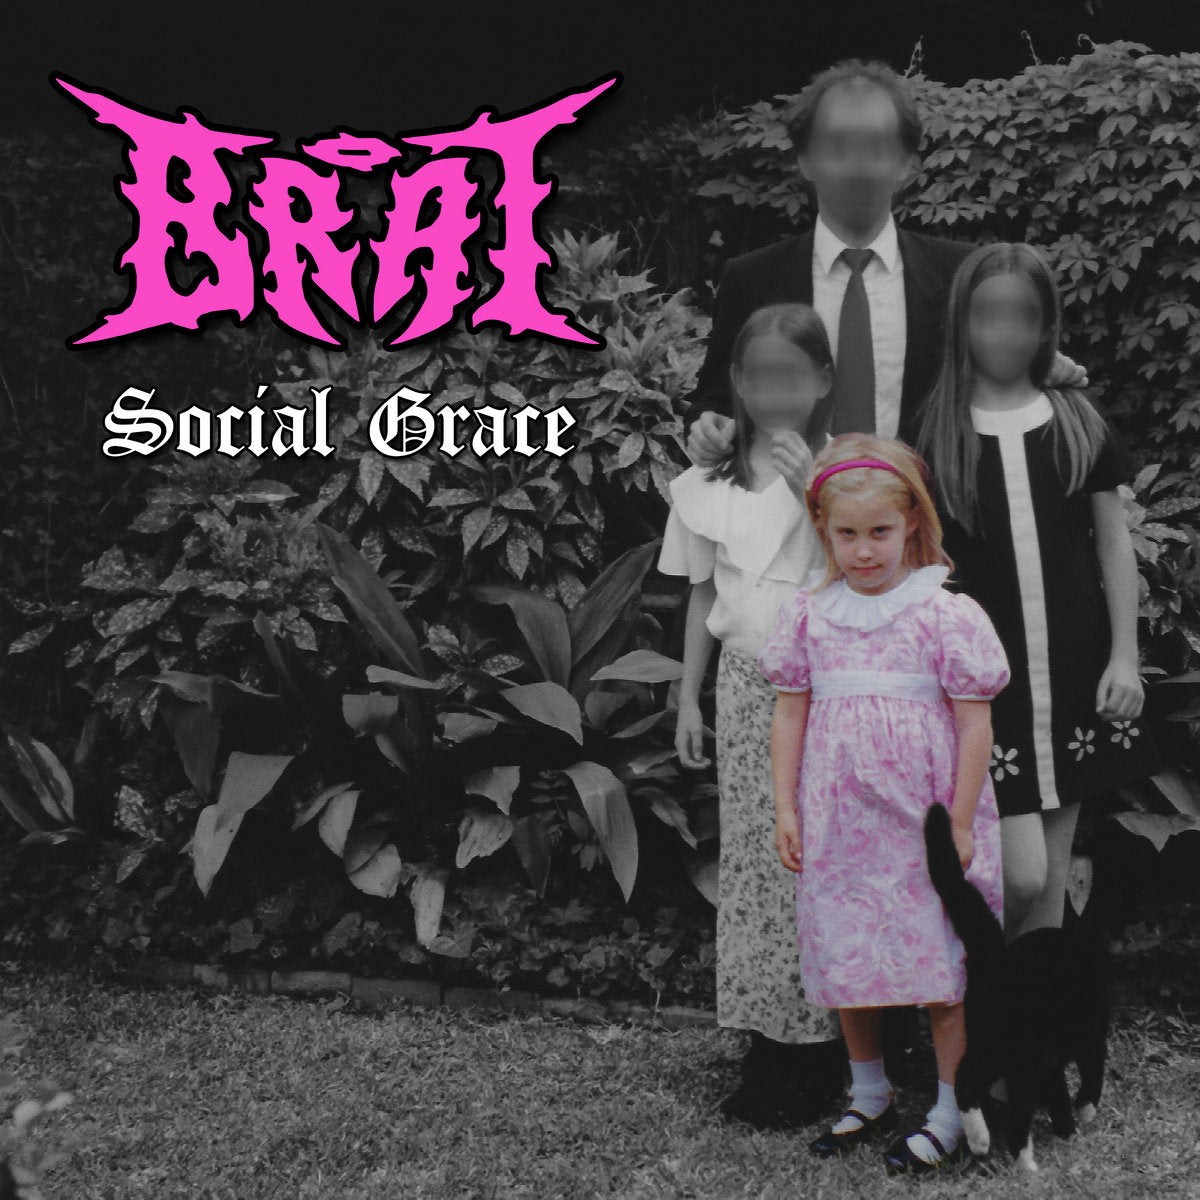 Brat "Social Grace" LP